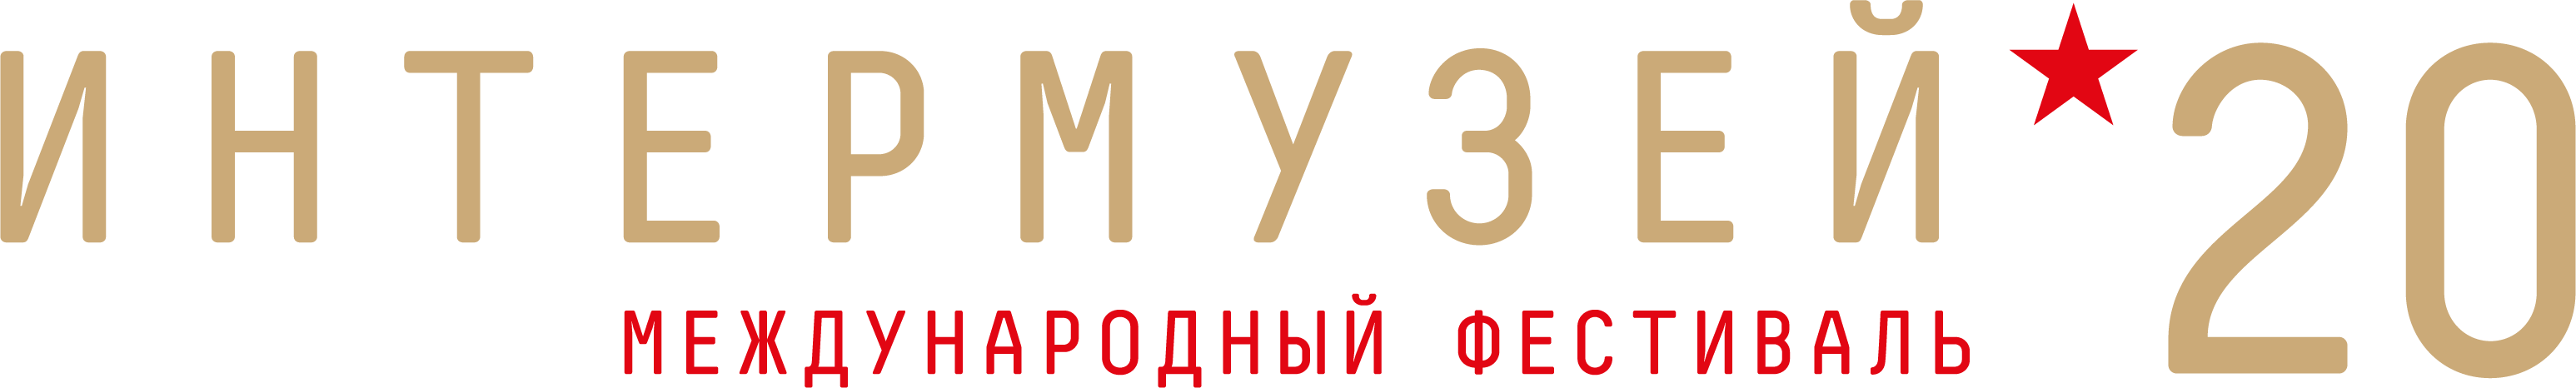 Logo_IM